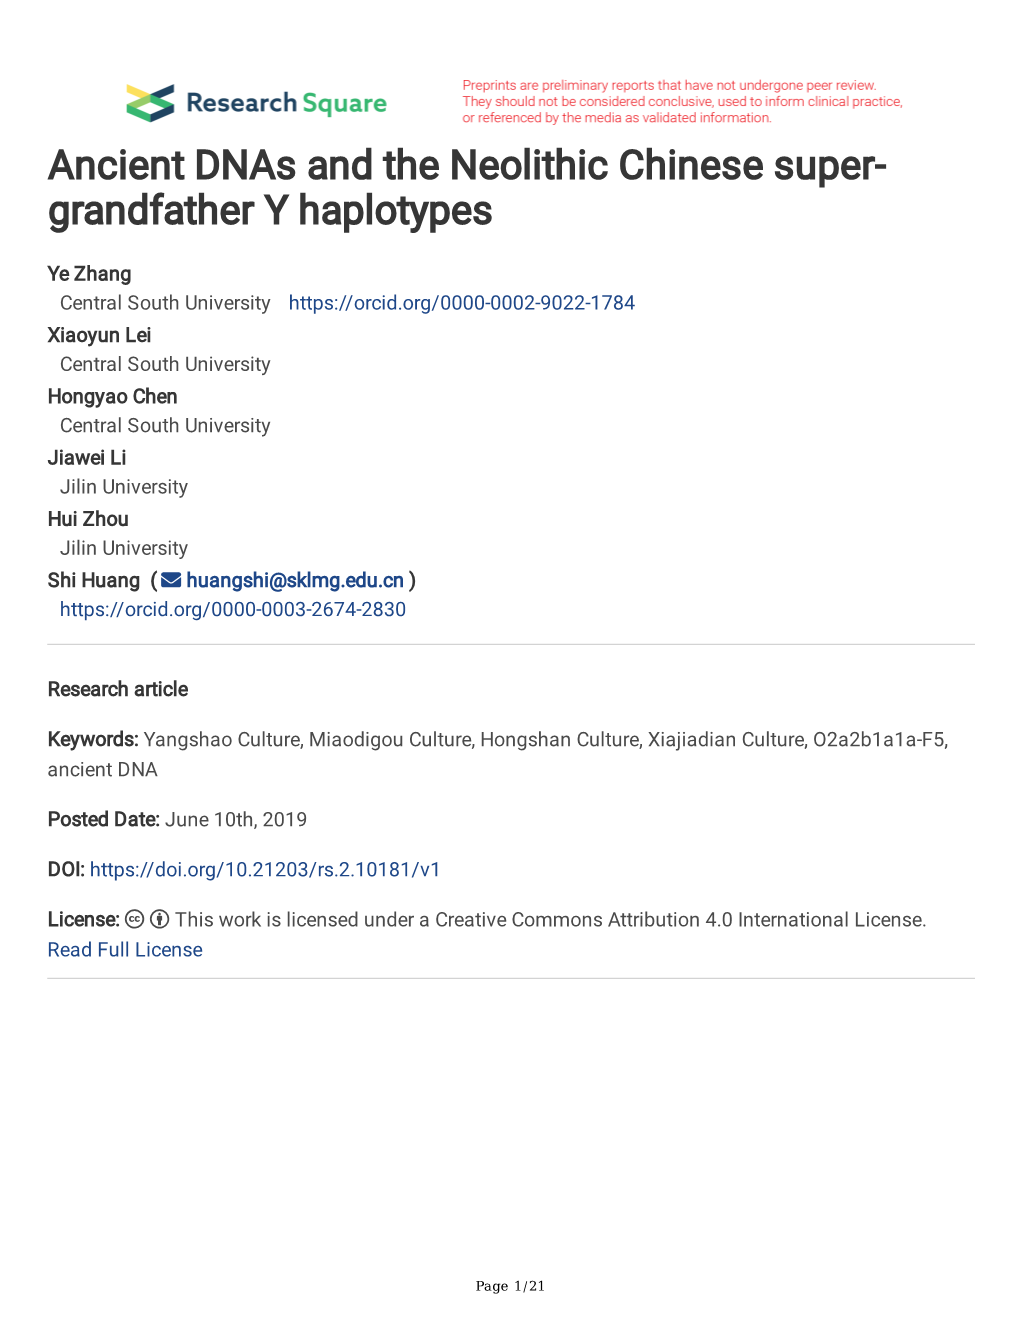 Grandfather Y Haplotypes